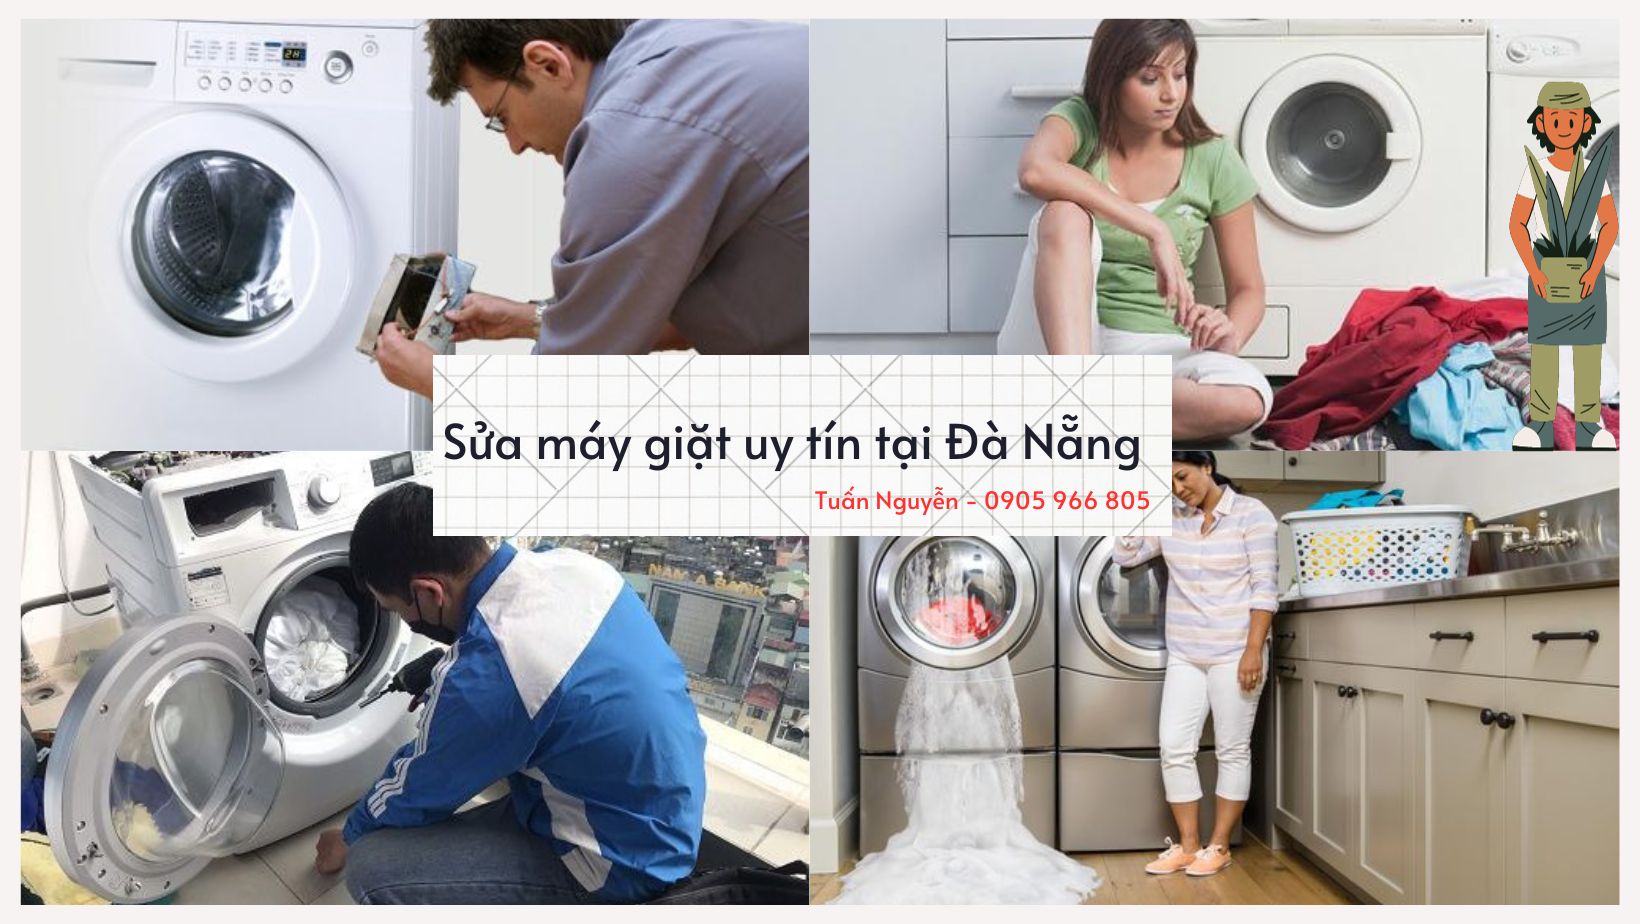 Sửa máy giặt uy tín, gọi có ngay tại Đà Nẵng 